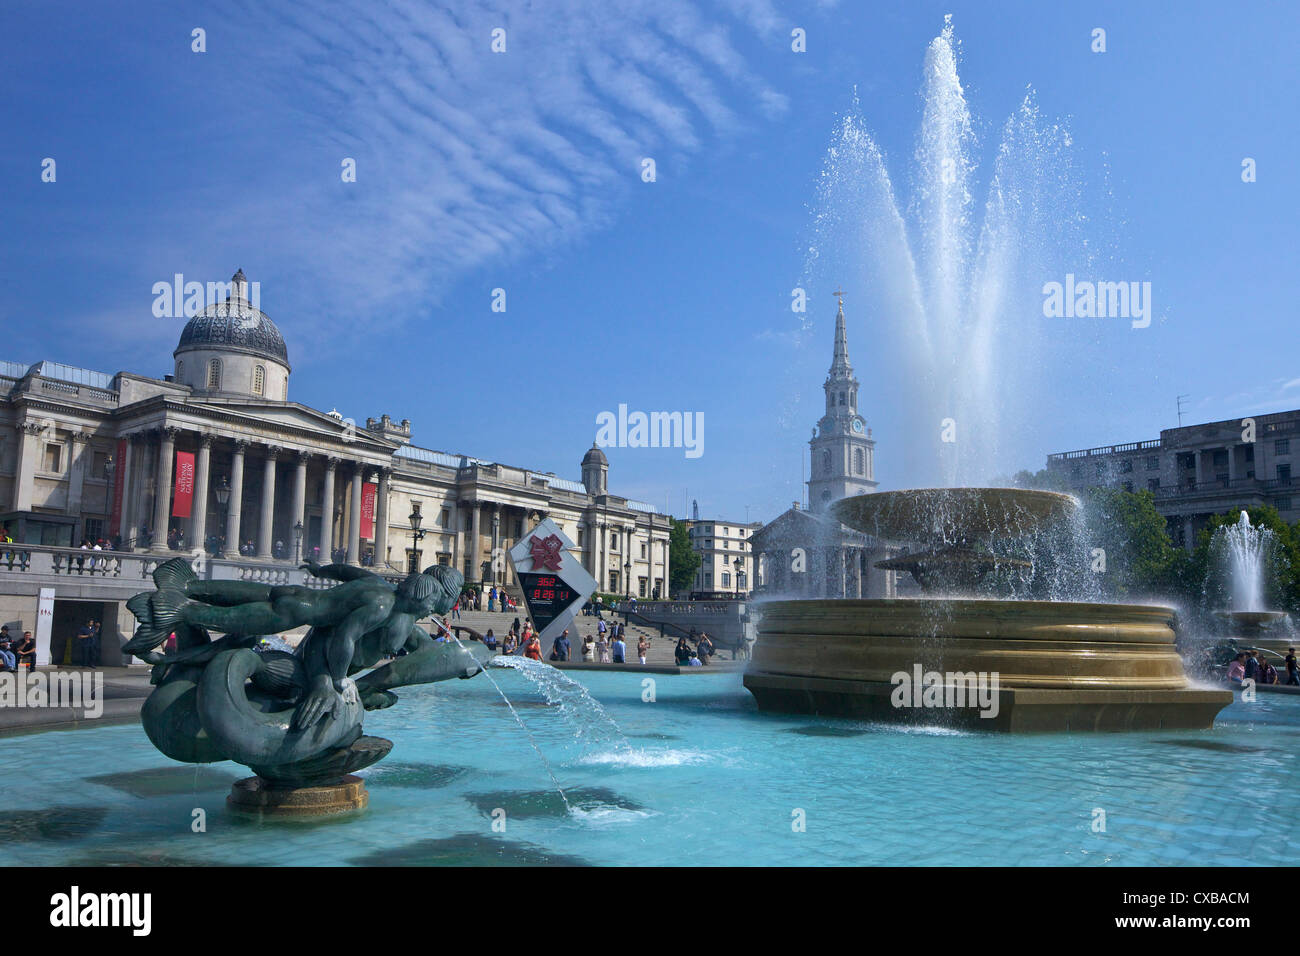 Tritons et fontaine du Dauphin avec l'horloge du compte à rebours numérique olympique et la National Gallery, Trafalgar Square, Londres Banque D'Images